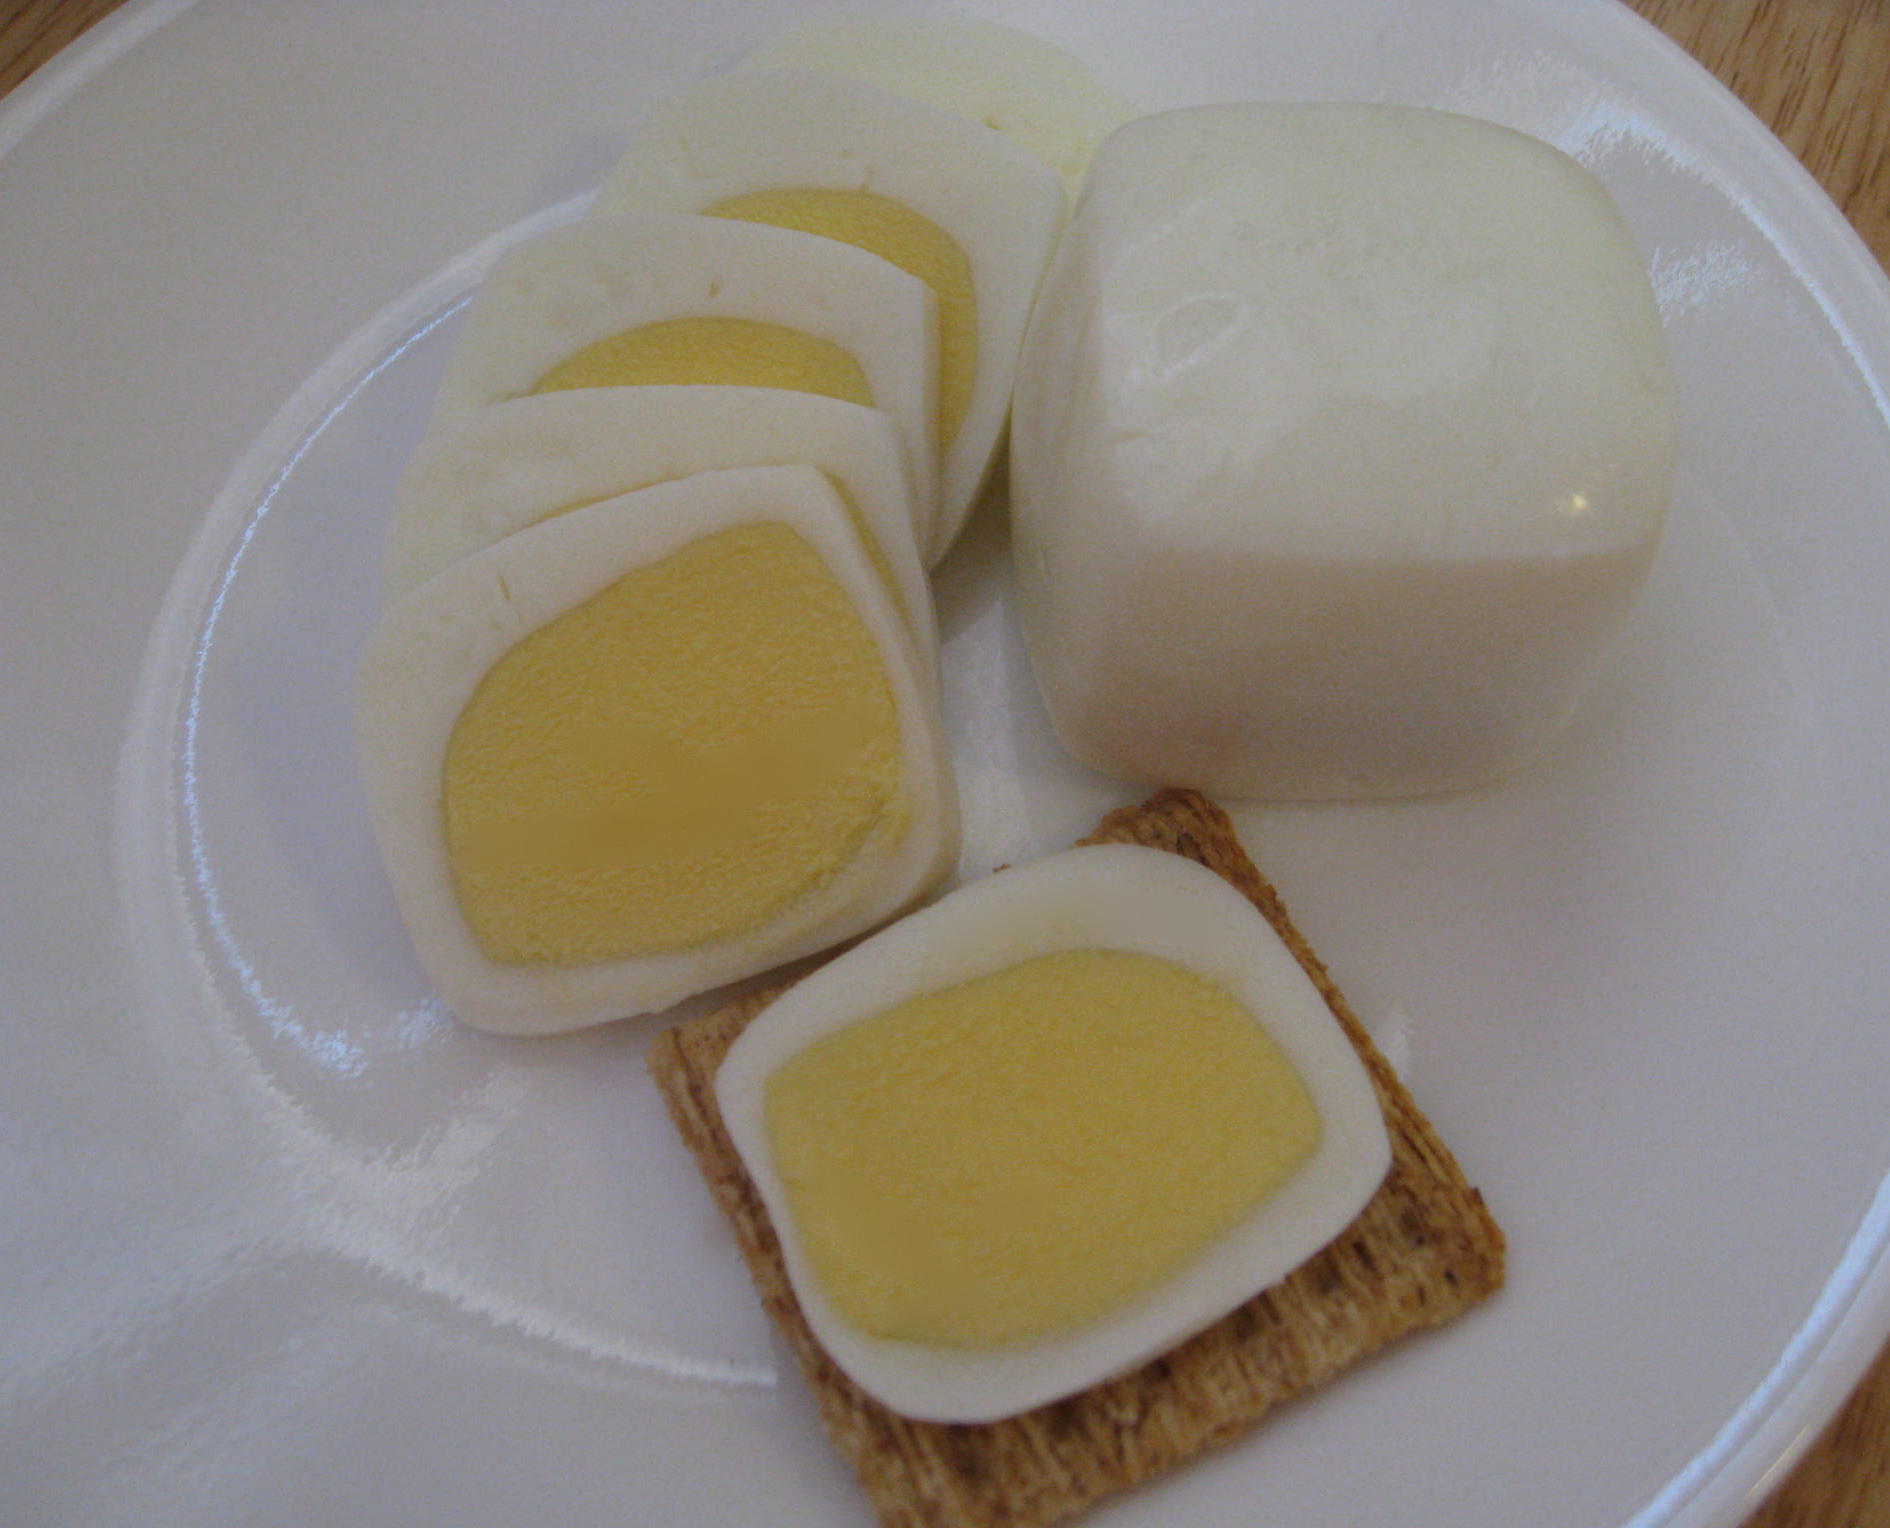 Square-egg-with-sliced-egg